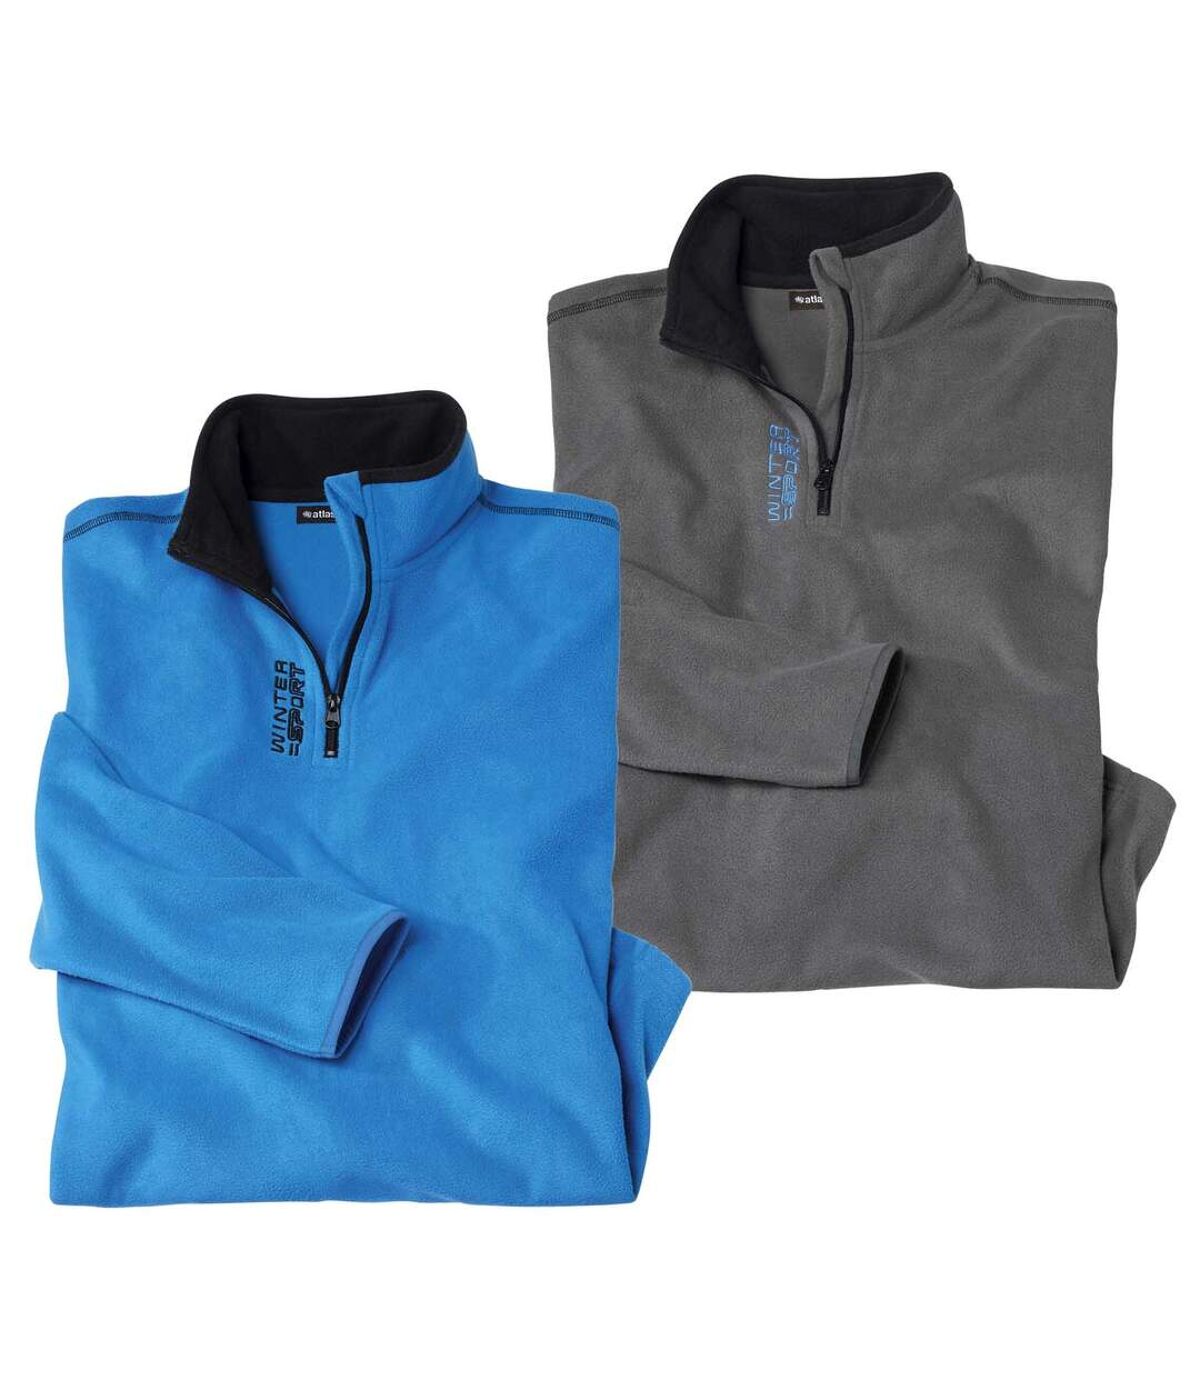 Pack of 2 Men's Half Zip Microfleece Sweaters - Gray Blue Atlas For Men